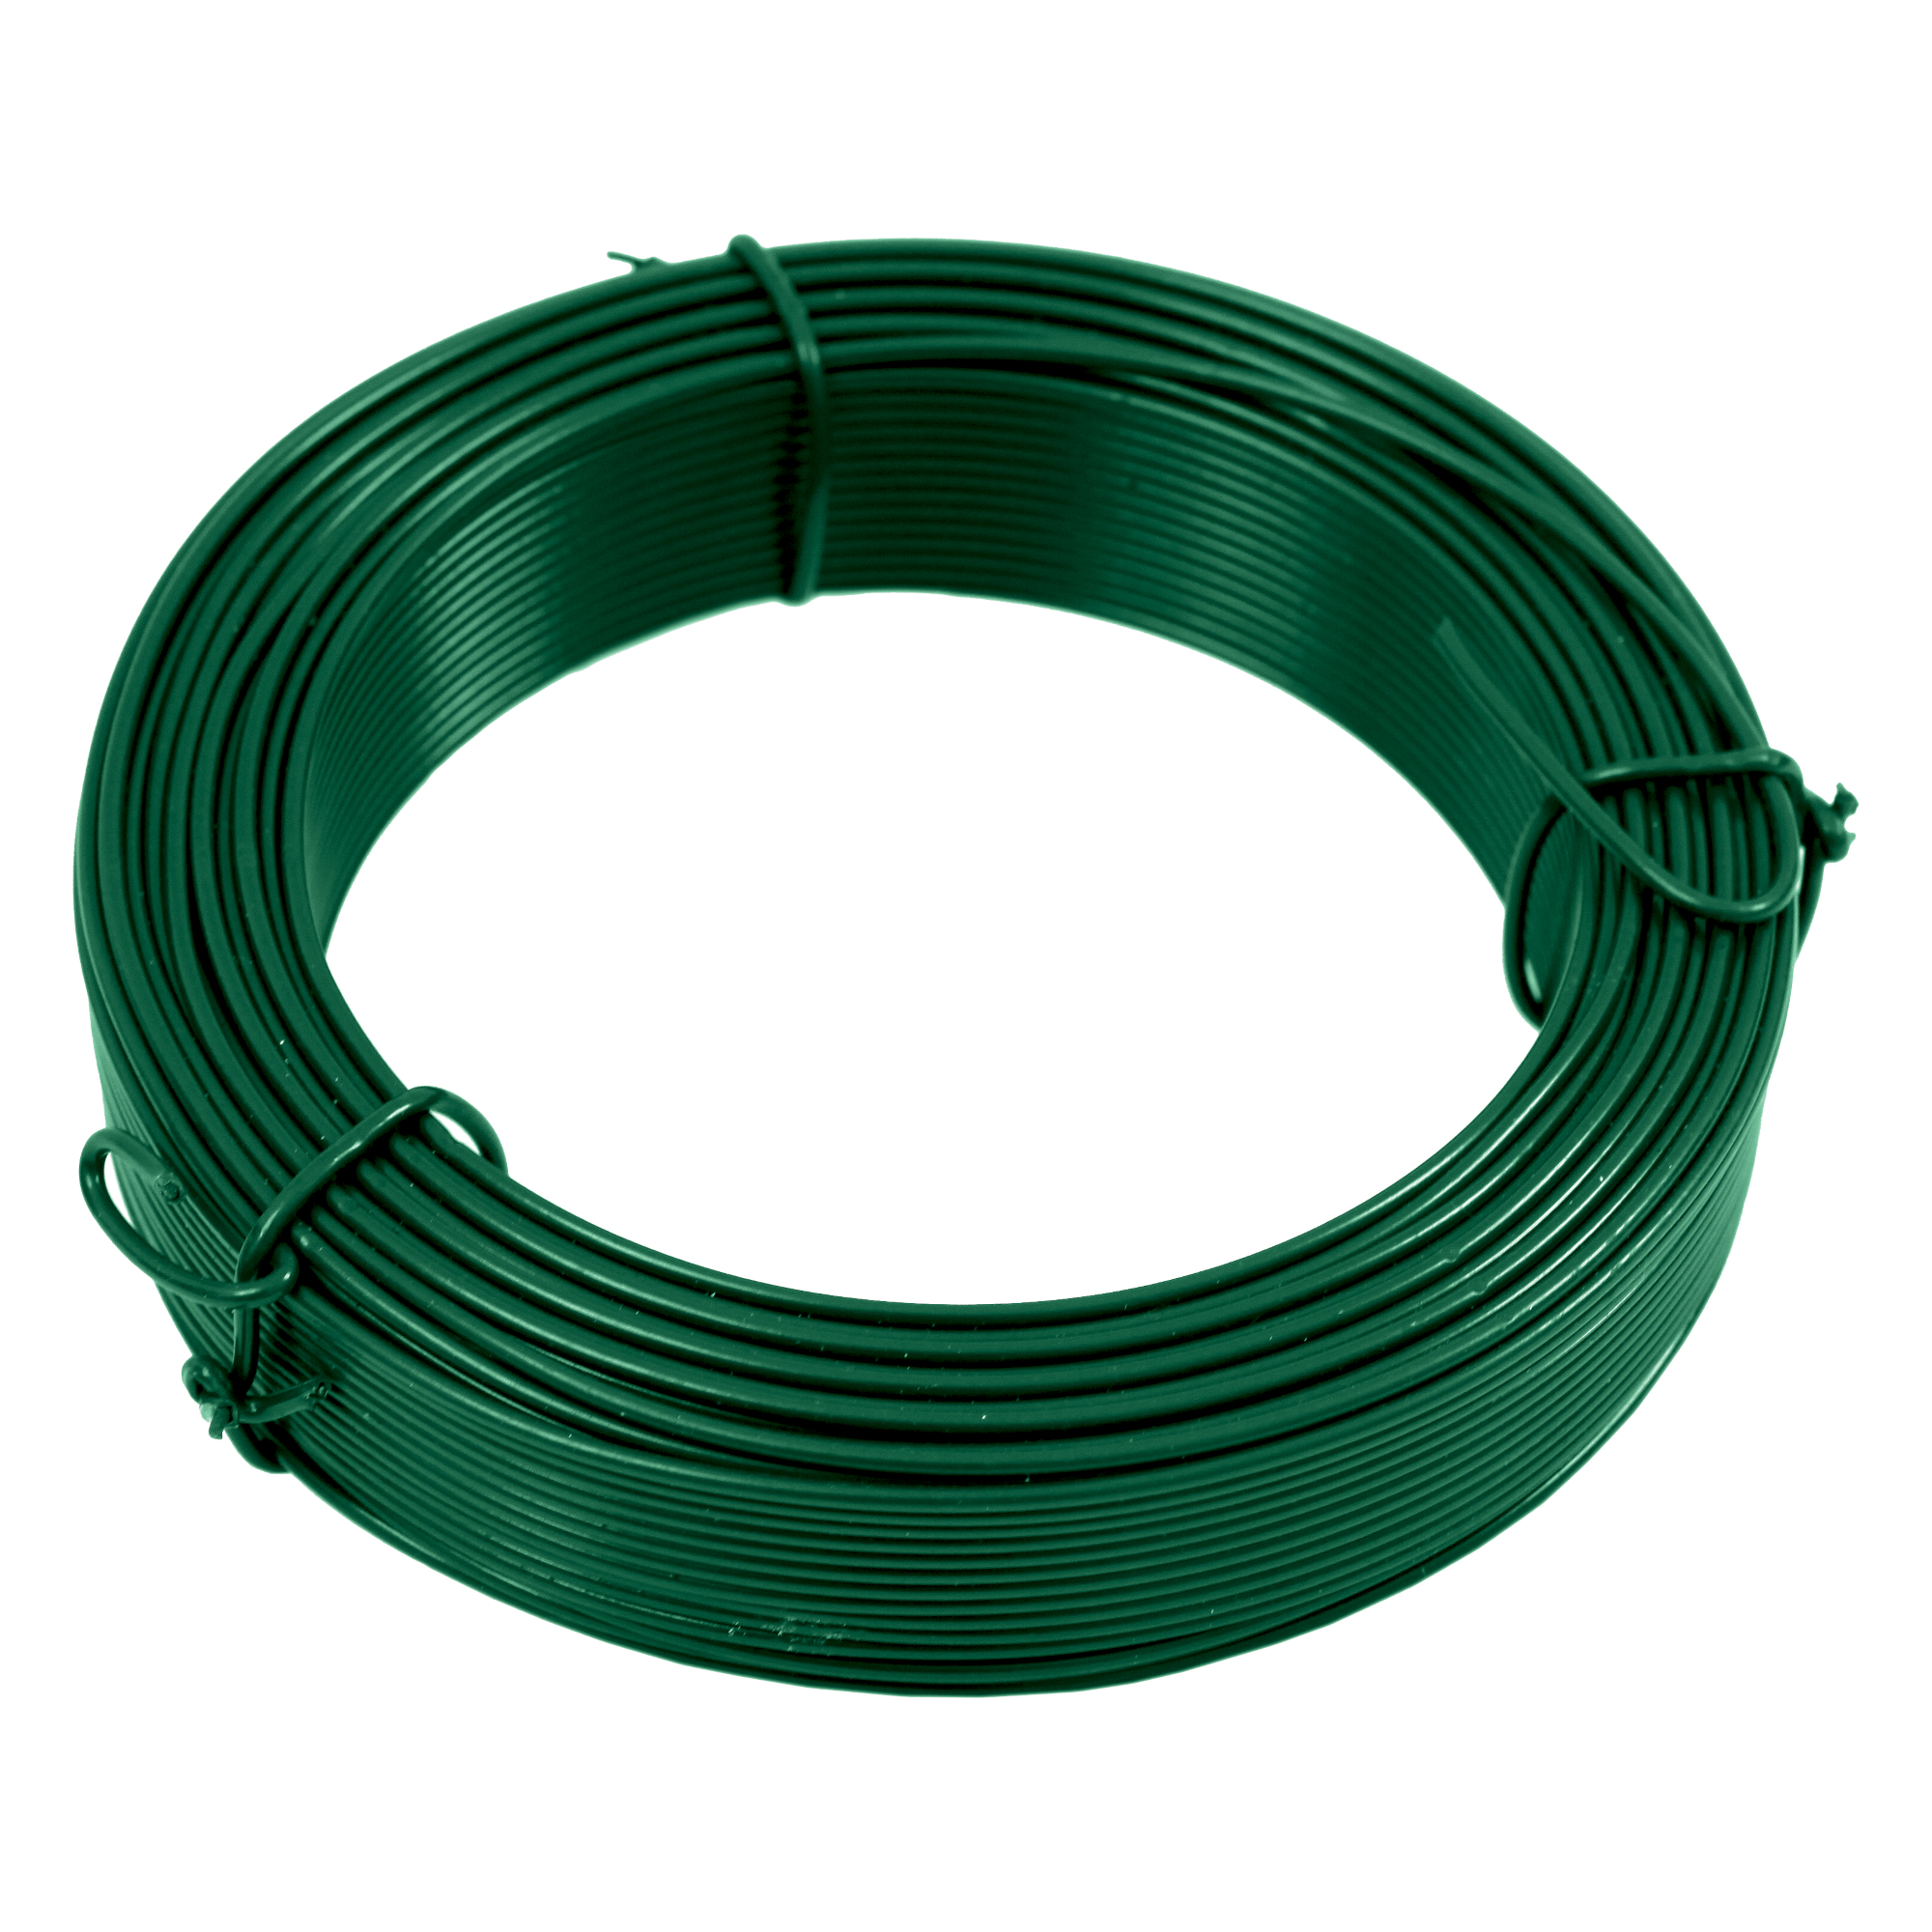 Drát vázací Zn + PVC zelený průměr drátu 2,6 mm délka 25 m